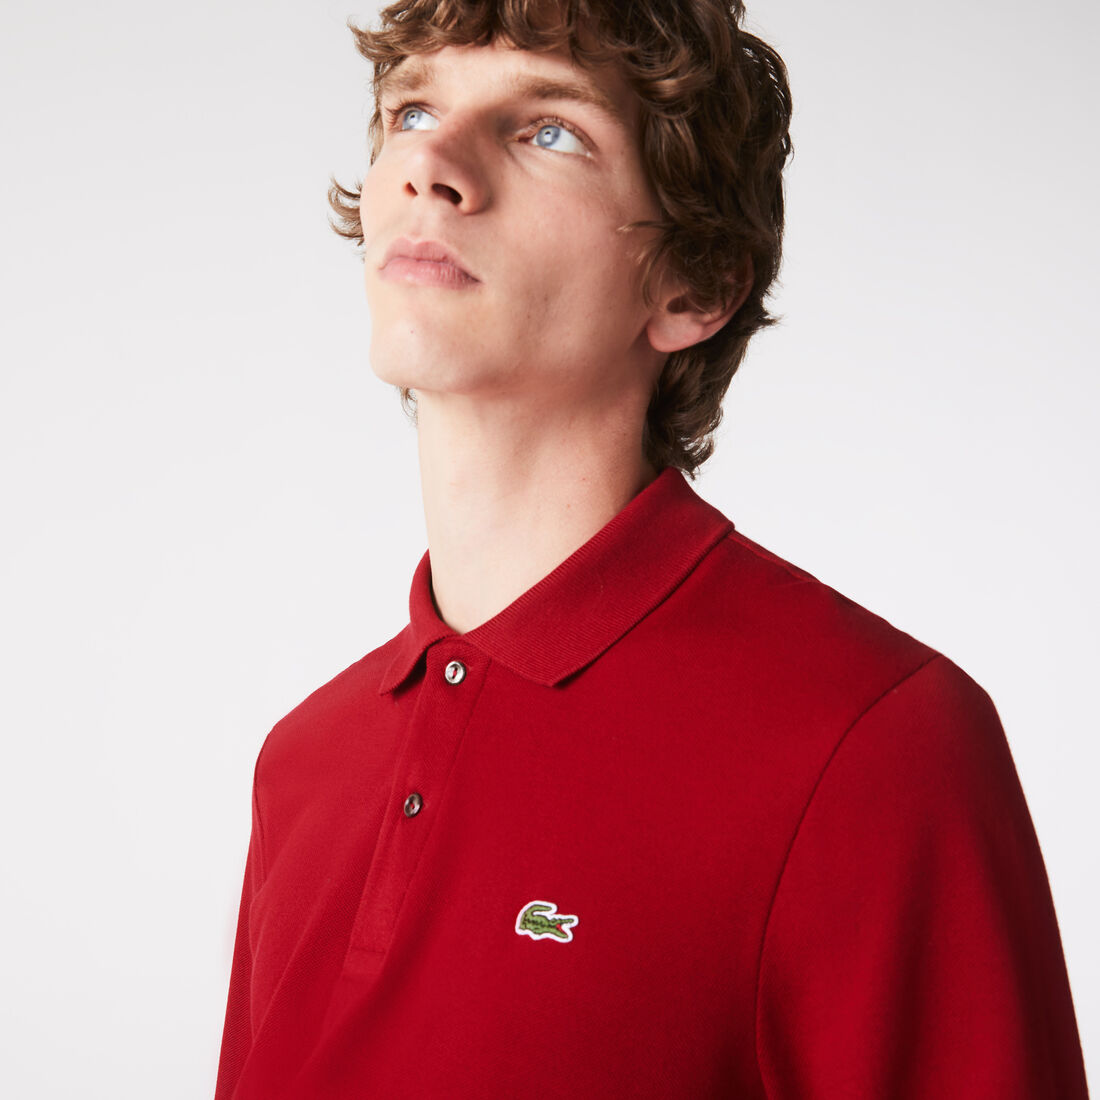 Lacoste Long-sleeve Klassische Fit L.12.12 Polo Shirts Herren Bordeaux | ARQP-83195